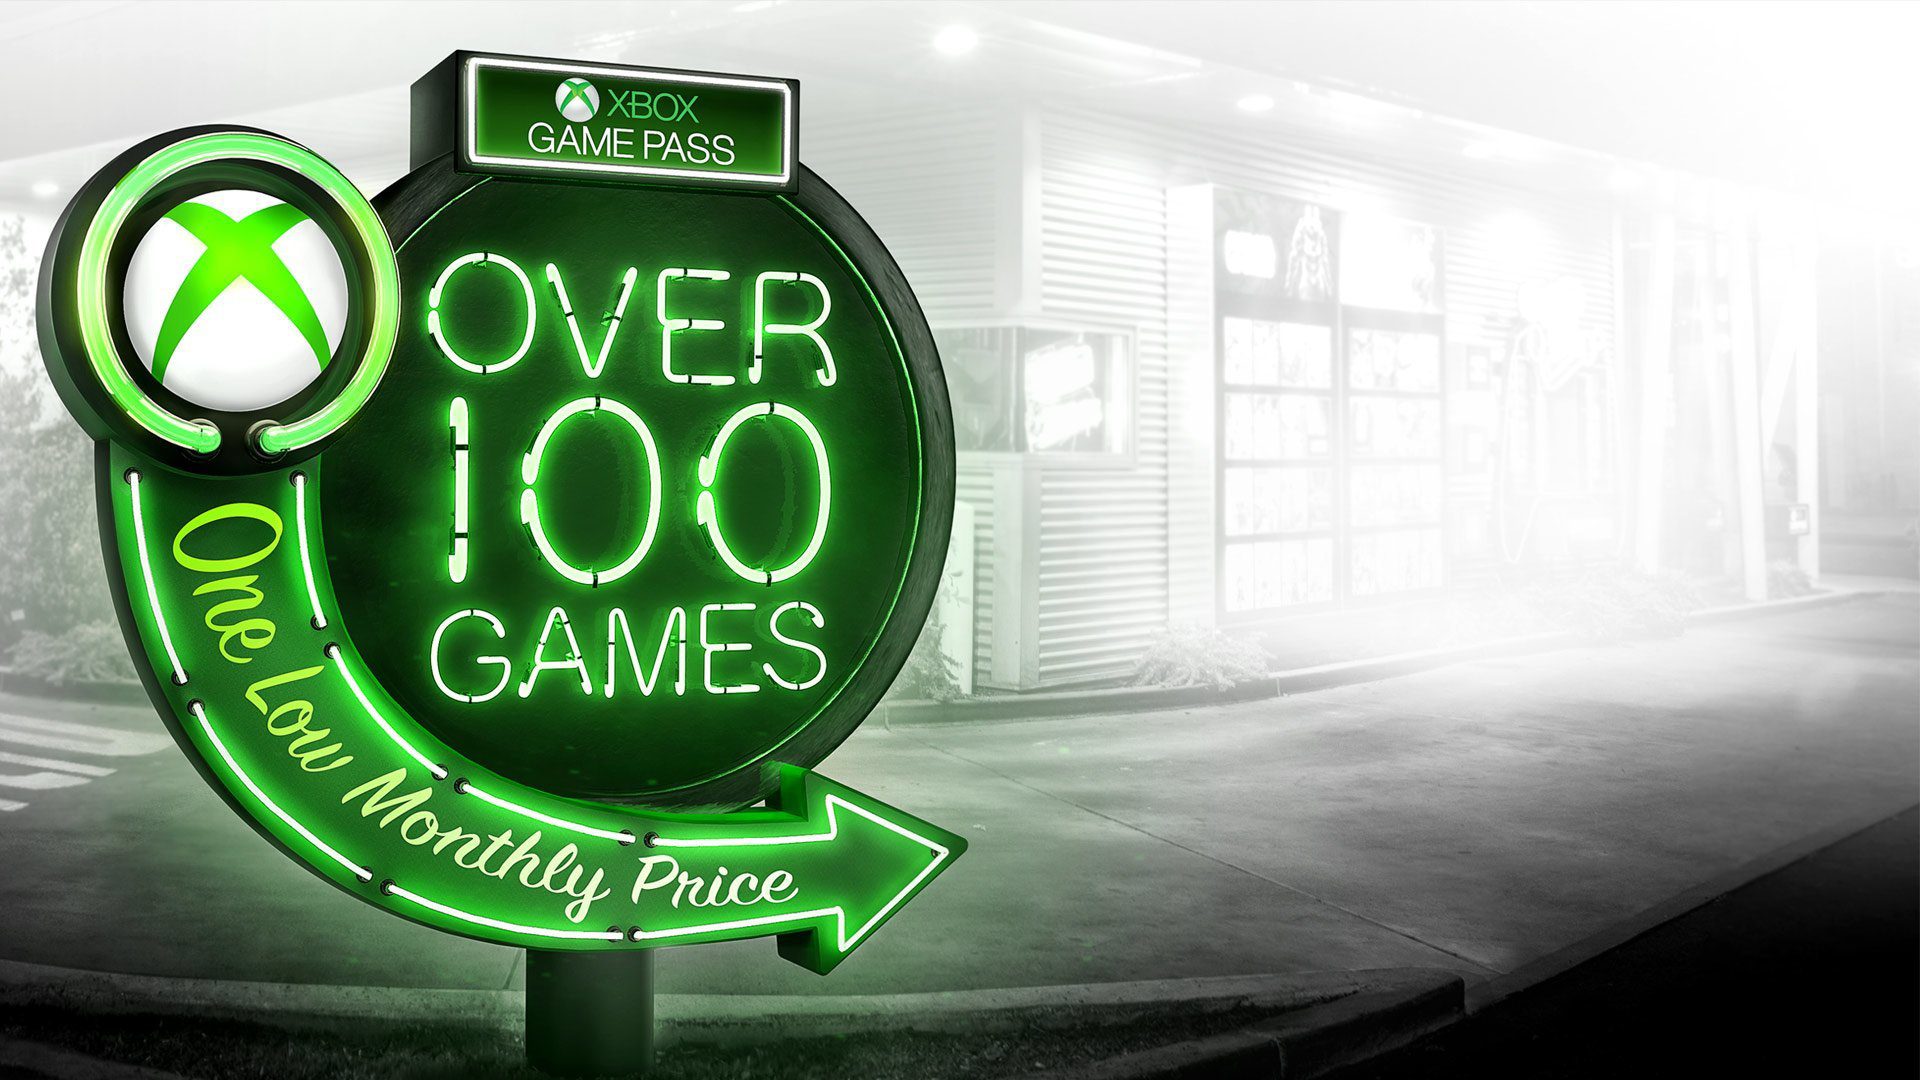 15 weitere Spiele kommen bald zum Xbox Game Pass! Werfen wir einen Blick auf die neuen Artikel im Service 91